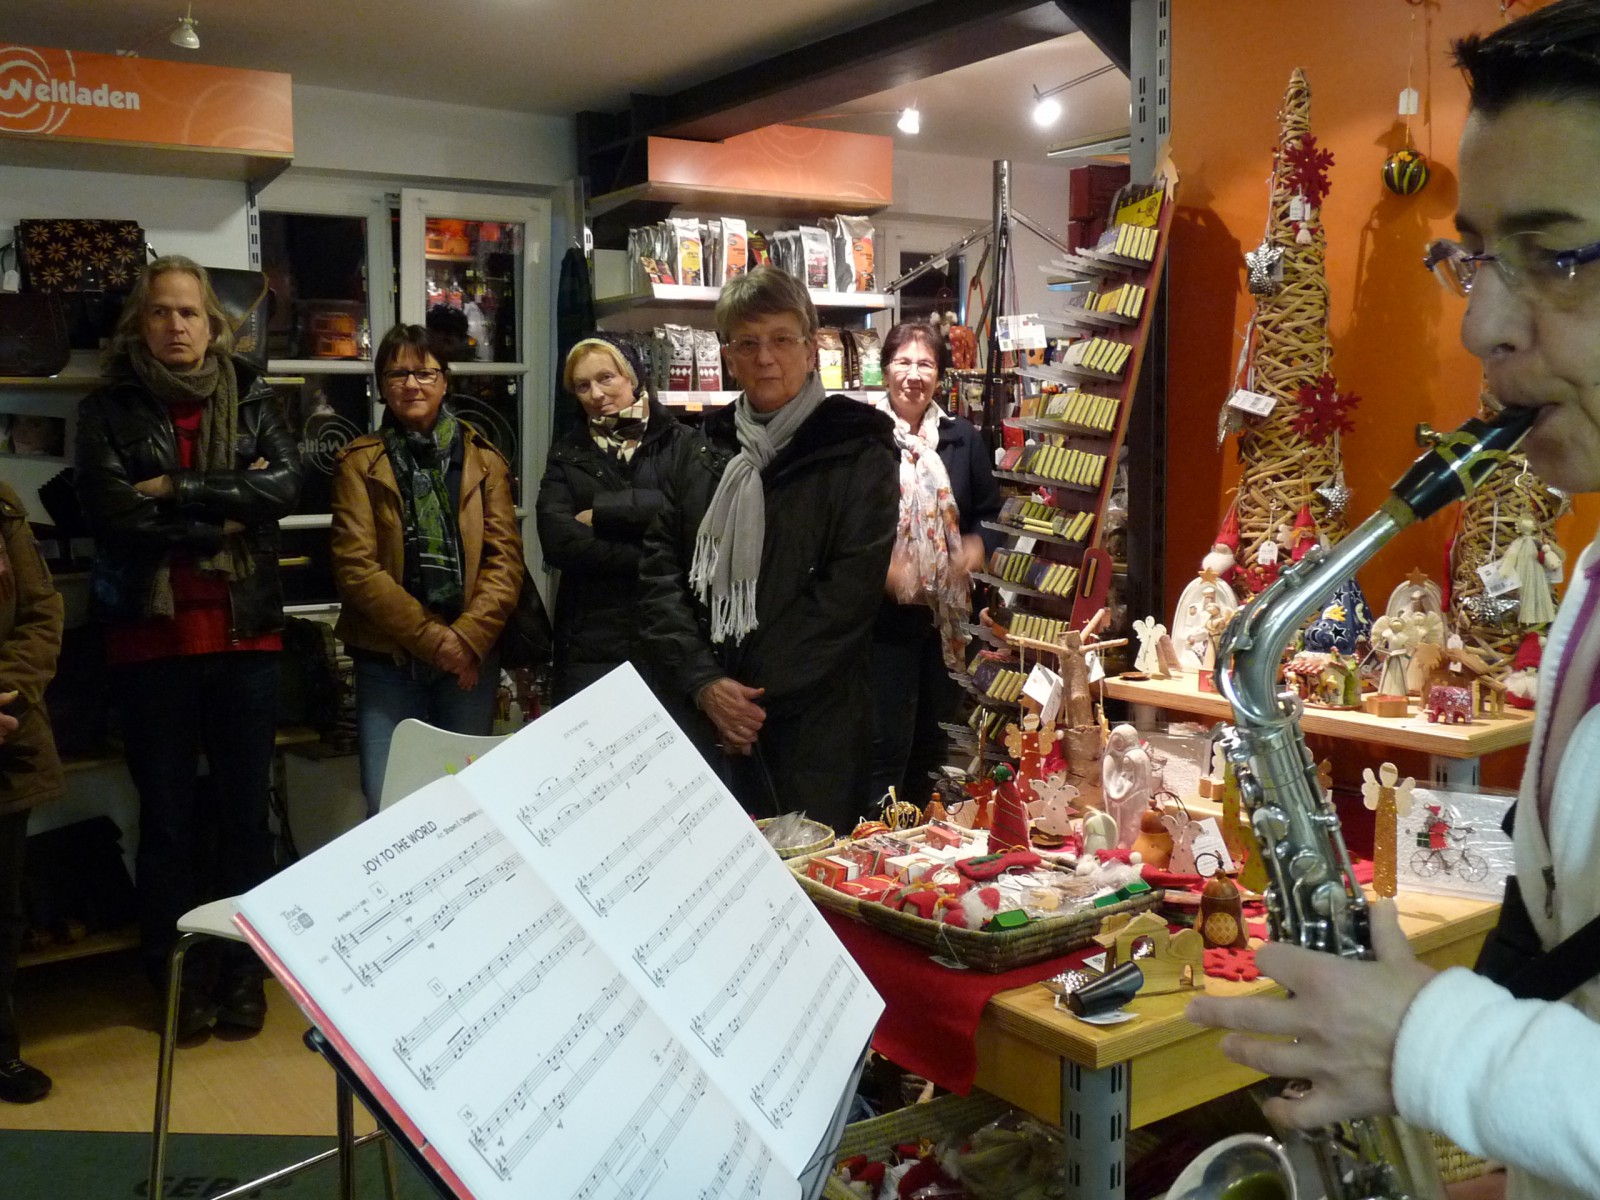 Zahlreiche Besucher ließen sich einladen, innezuhalten vom Einkaufsstress. Mit weihnachtlichen Klängen auf dem Saxophon umrahmte Petra Grumbach die besinnlichen Texte aus dem ADVENTSKALENDER "ANDERE ZEITEN", gelesen von Nina Schramm